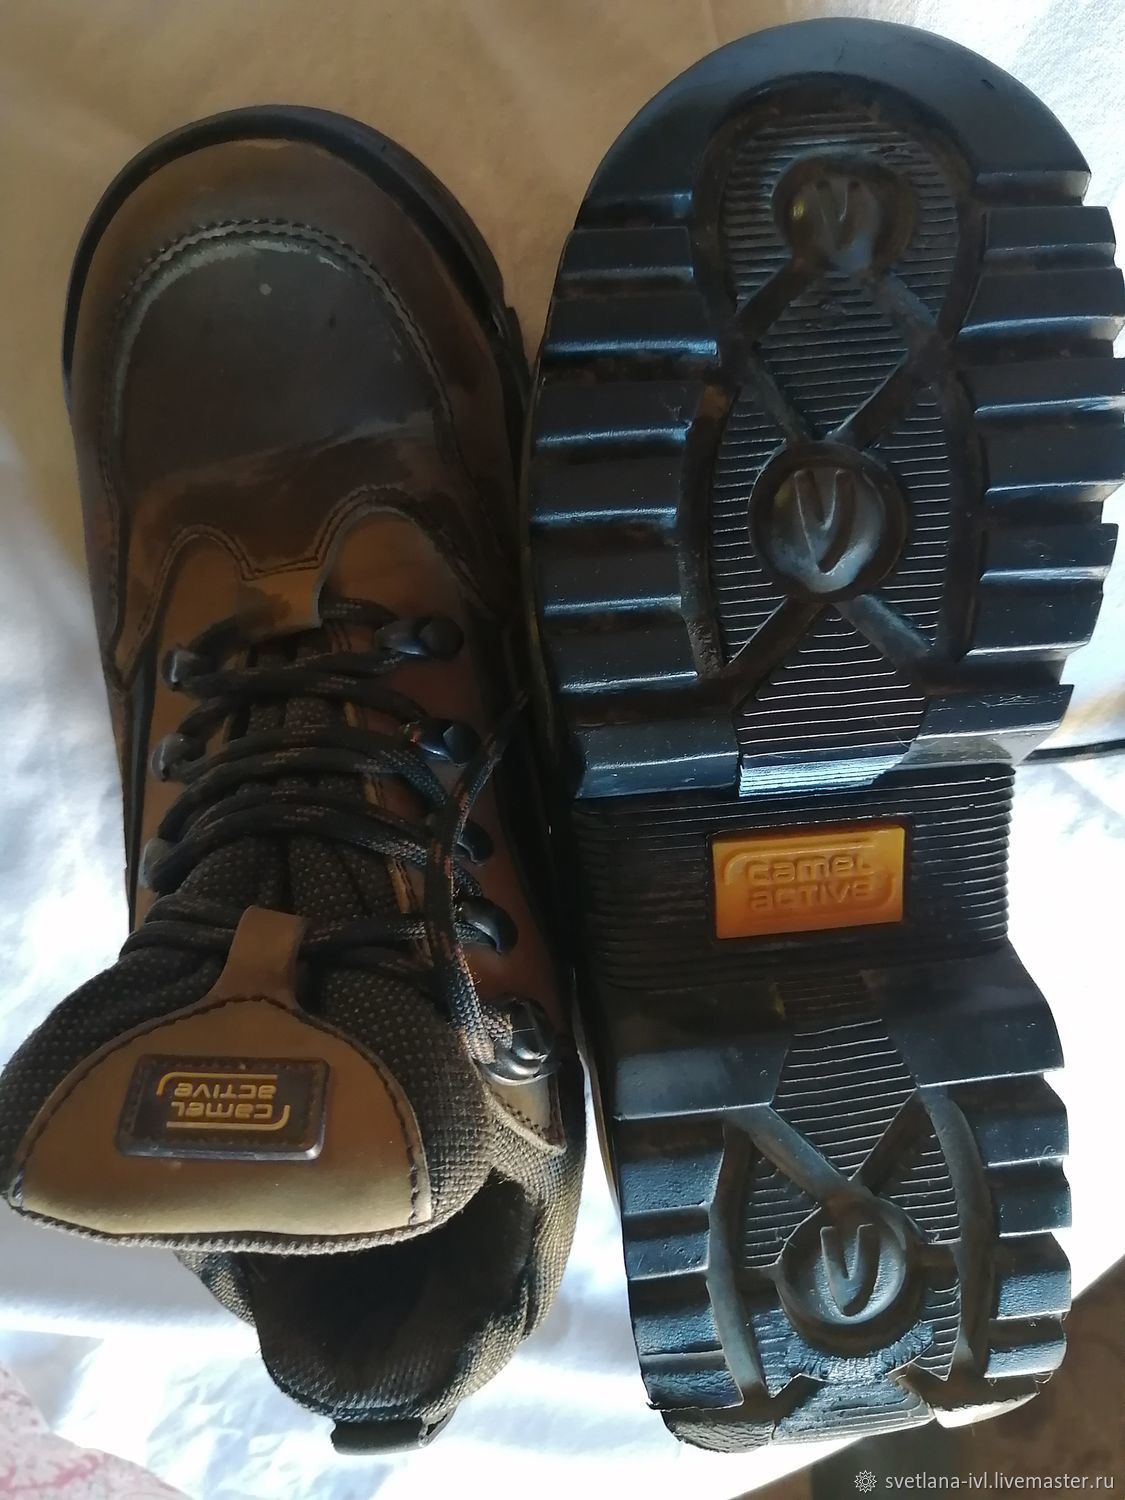 Винтаж: Обувь винтажная: Ботинки: Ботинки Camel activ.38 размер,б/у винтернет-магазине Ярмарка Мастеров по цене 2000 ₽ – SUB64RU